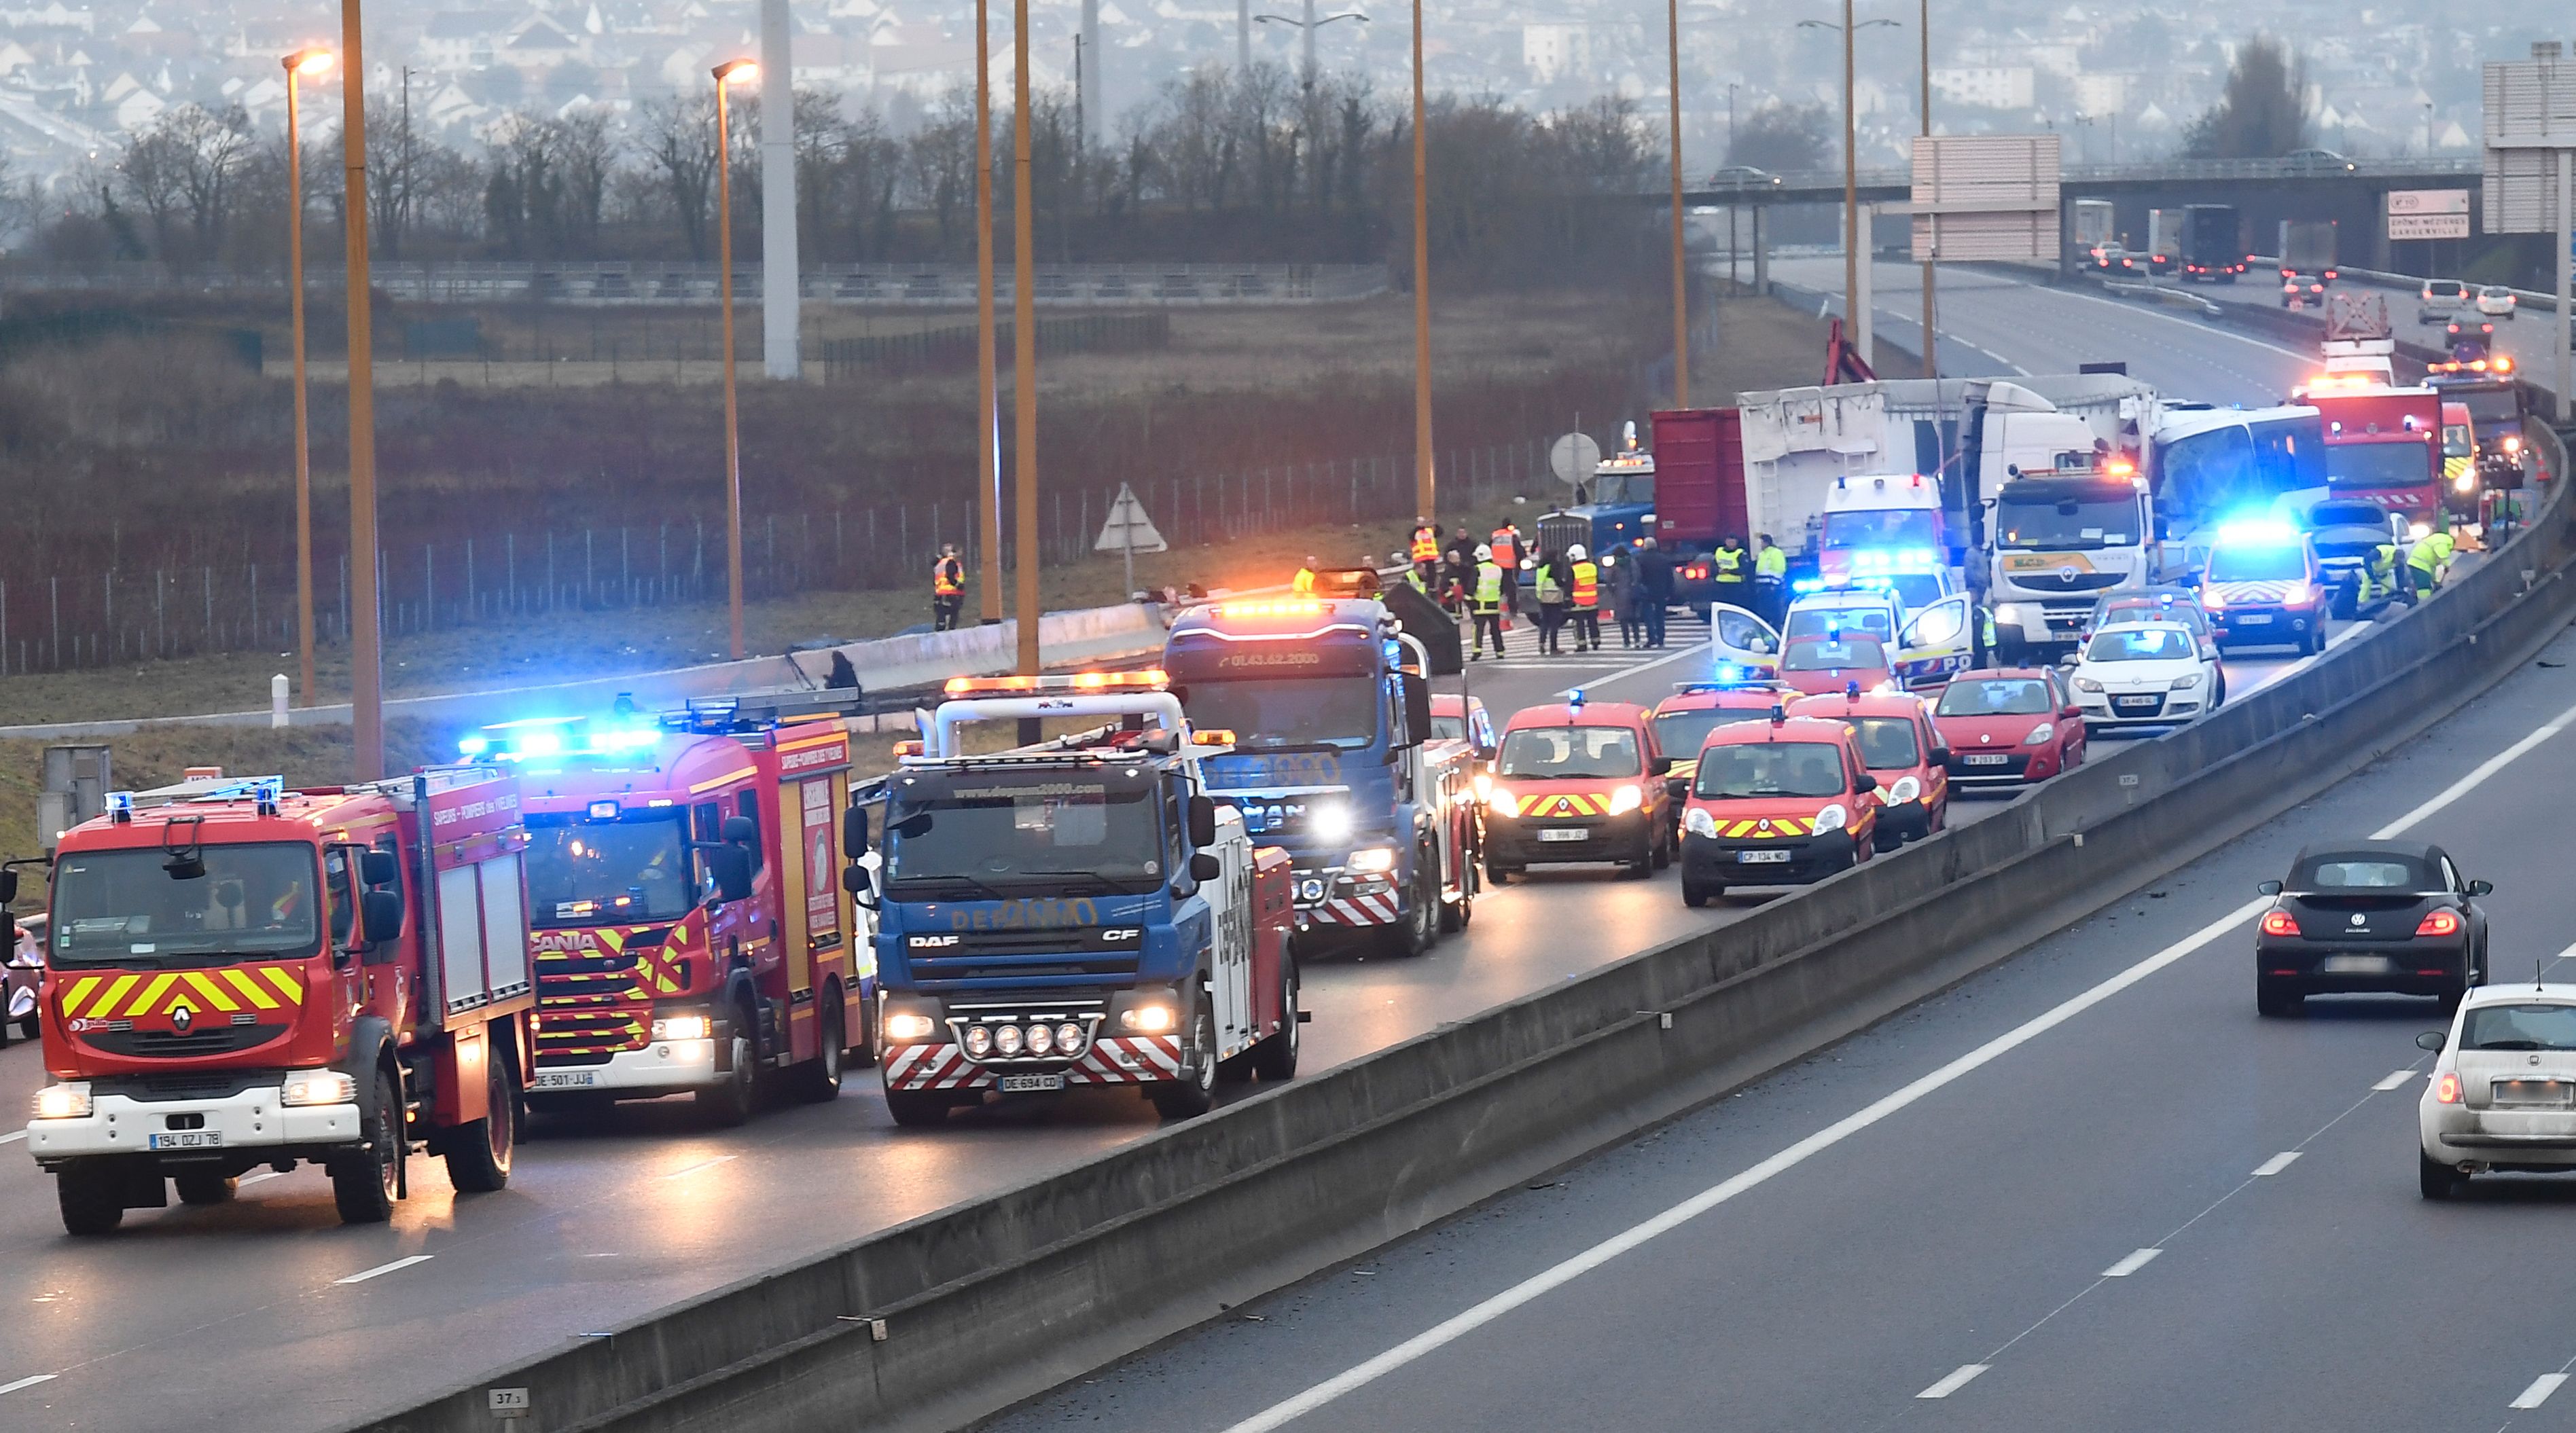 سيارات الإطفاء والإنقاذ تصل موقع حادث التصادم على الطريق السريع فى إبون الفرنسية